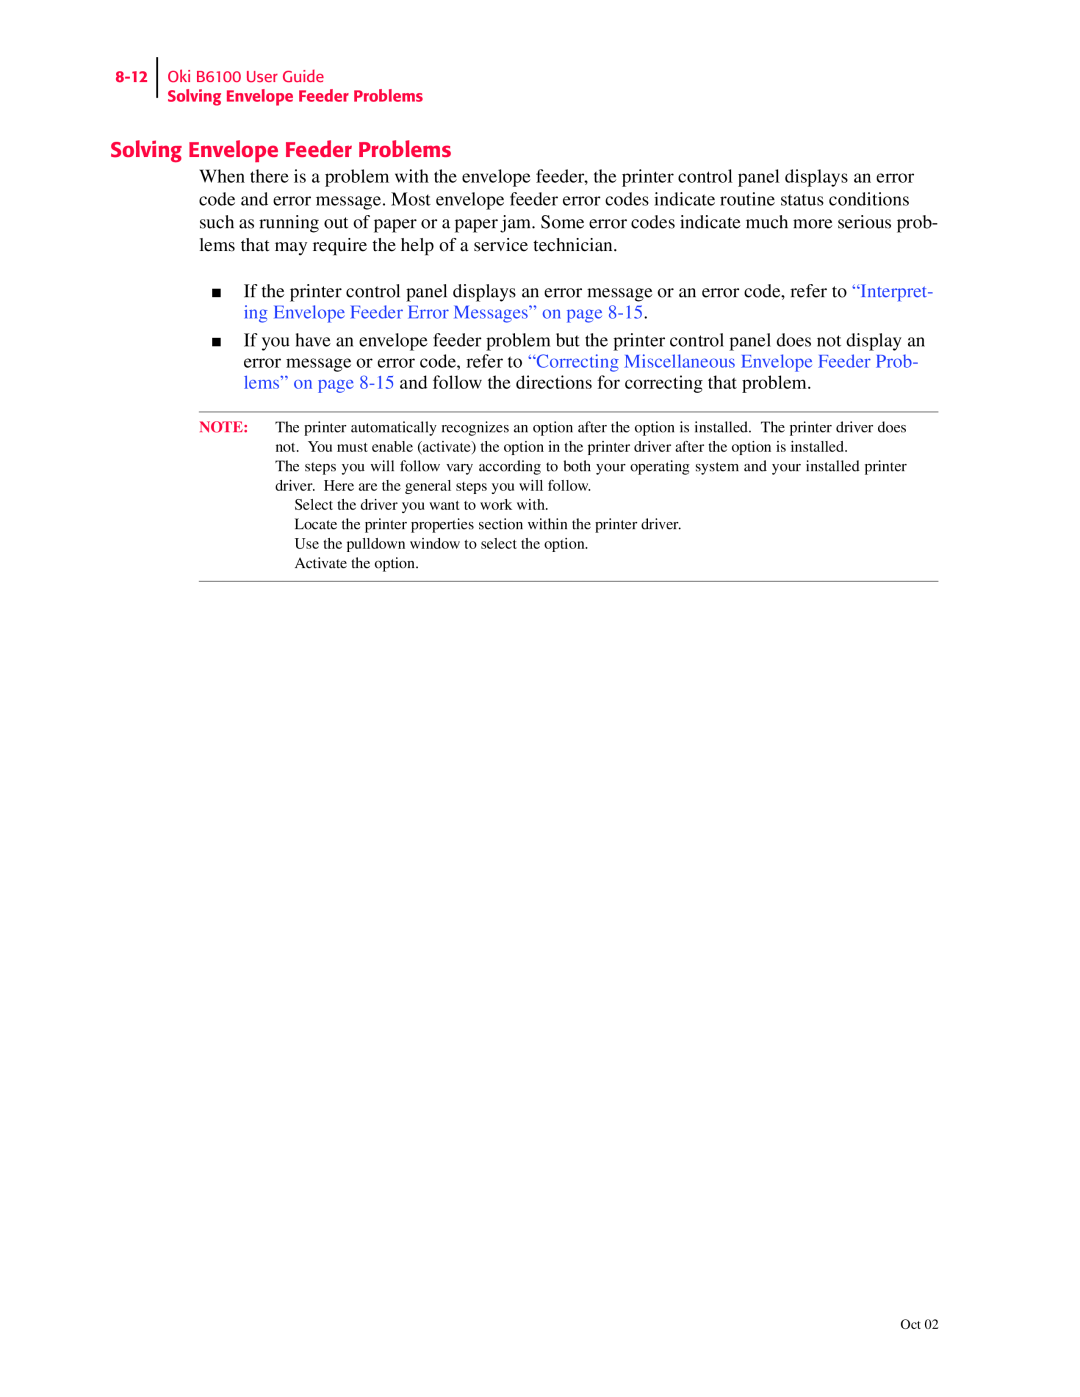 Oki manual Oki B6100 User Guide Solving Envelope Feeder Problems 